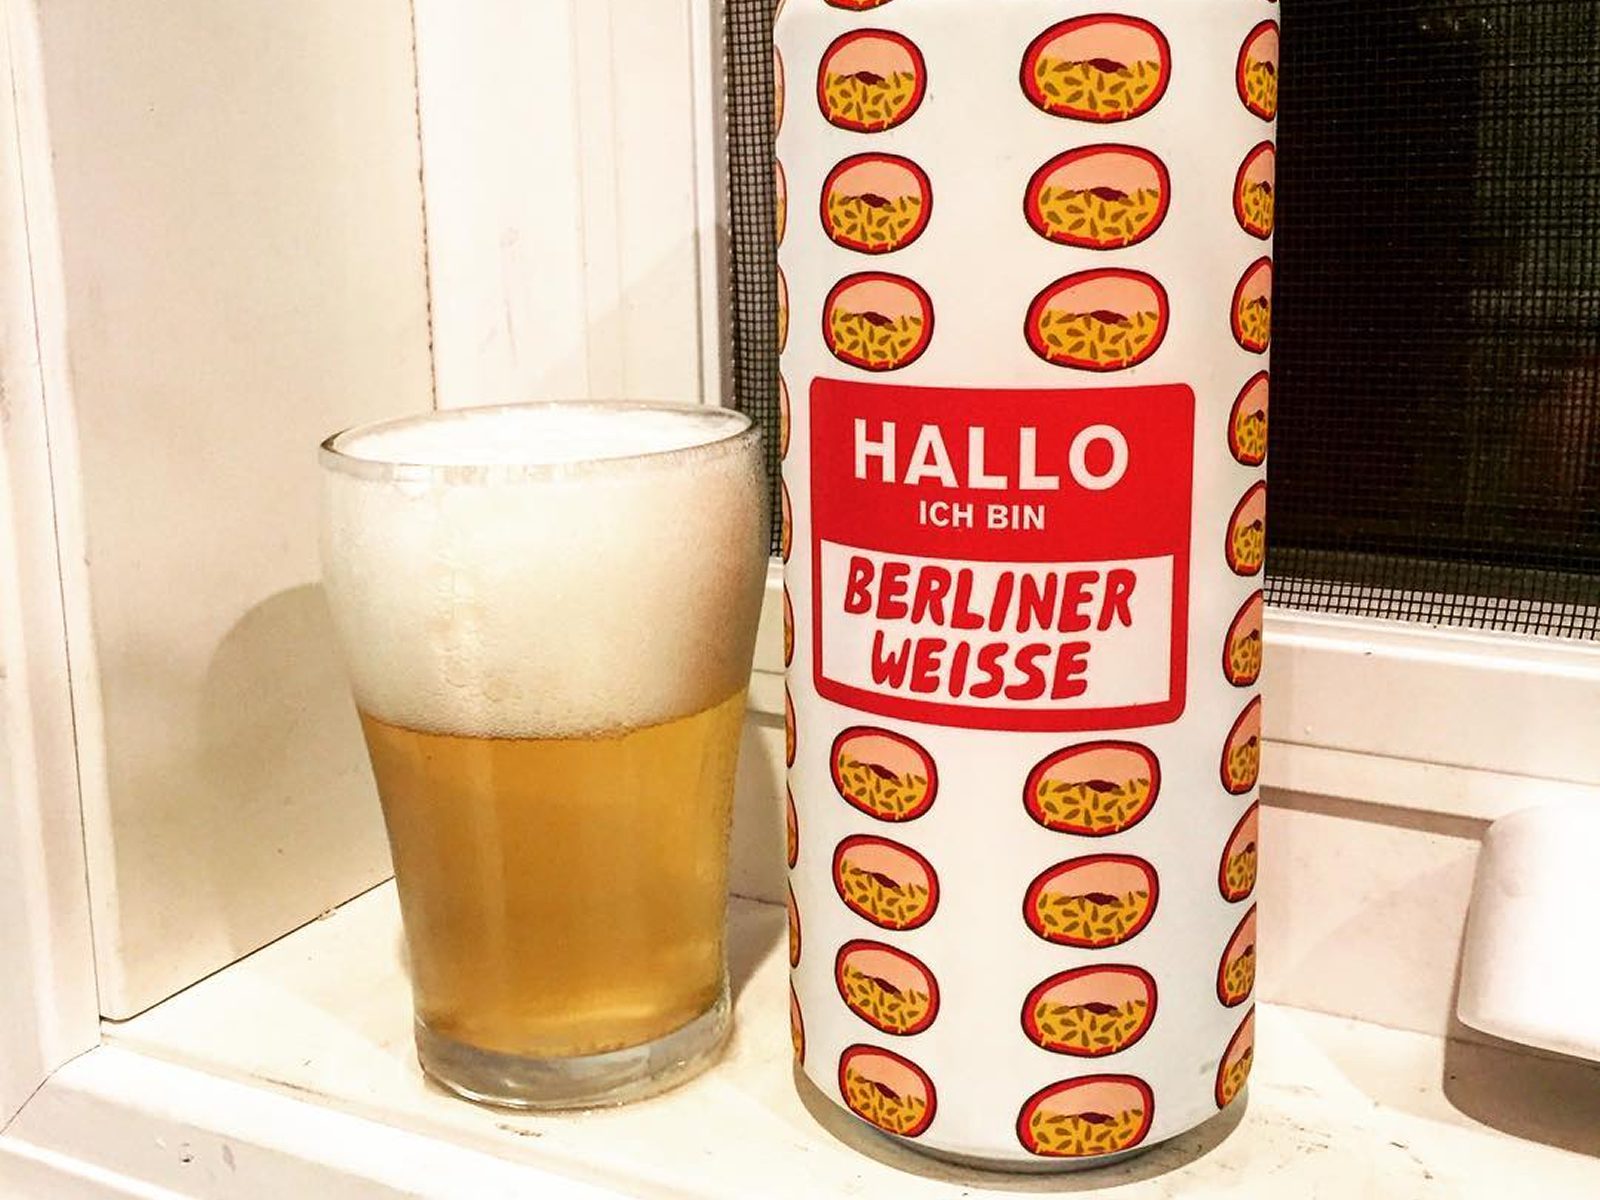 Mikkeller Brewery: Hallo Ich Bin Berliner Weisse Passion Fruit